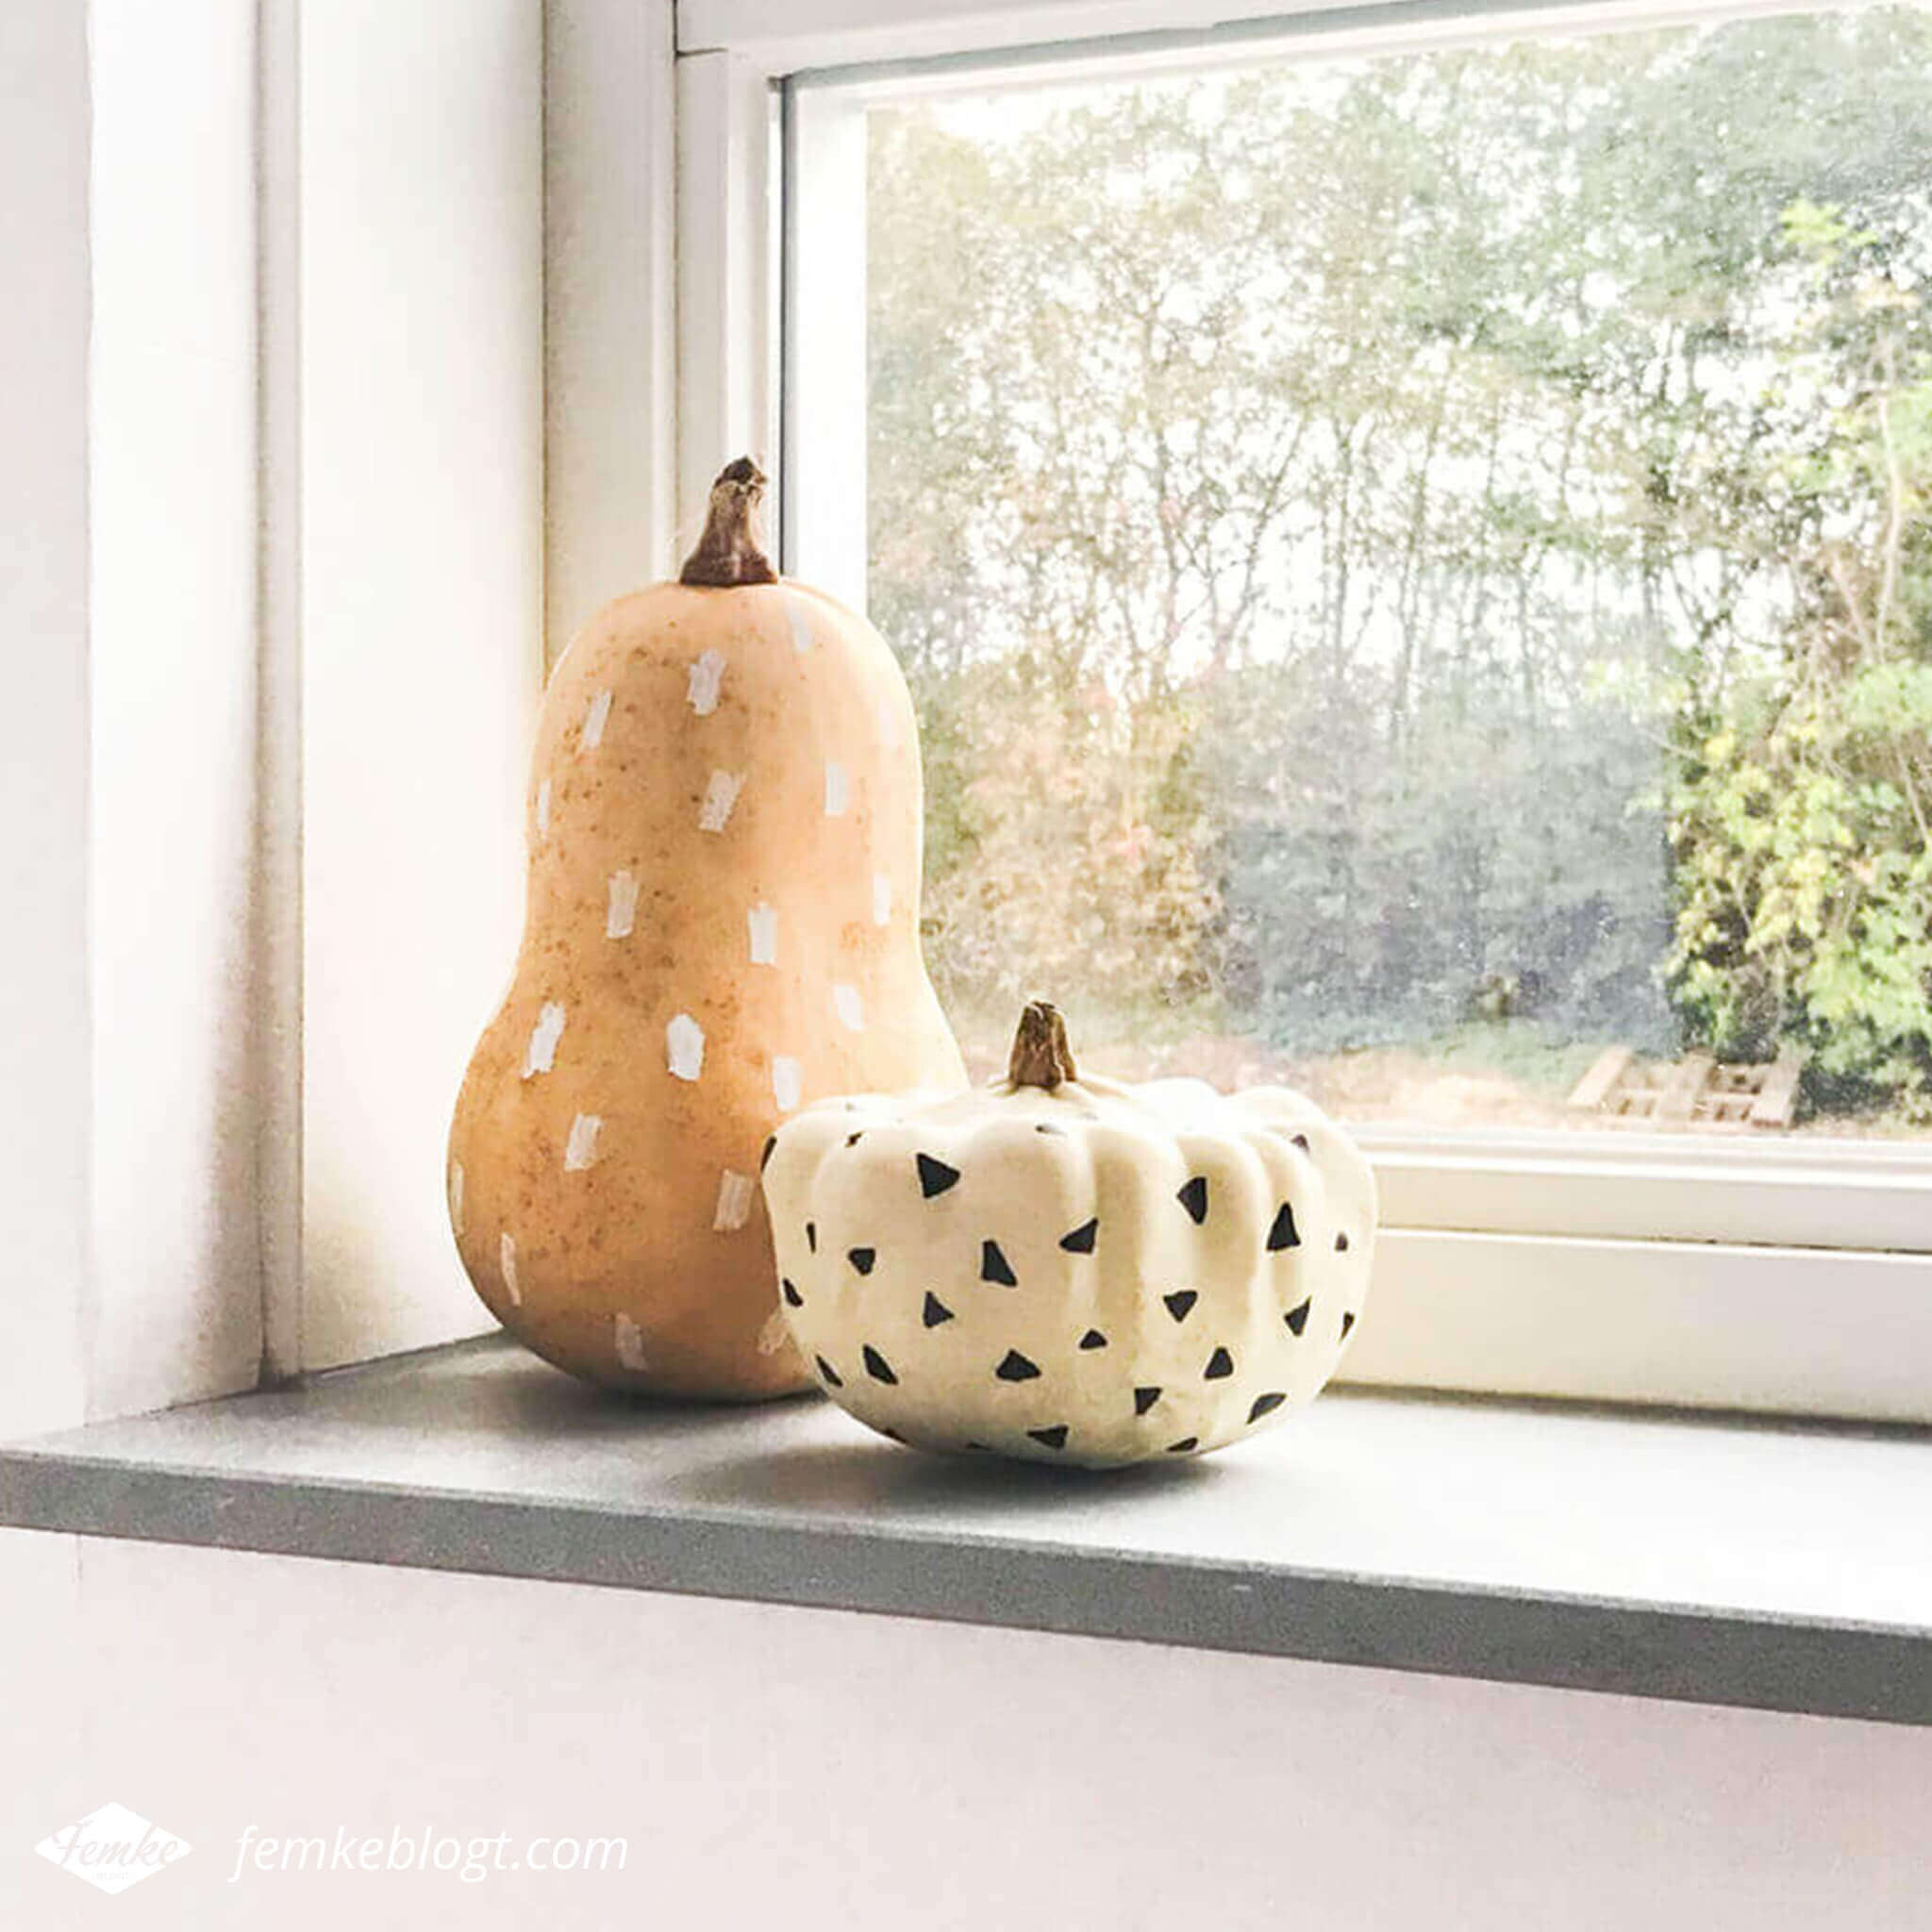 Maandoverzicht oktober | Haal de herfst in huis met versierde pompoenen